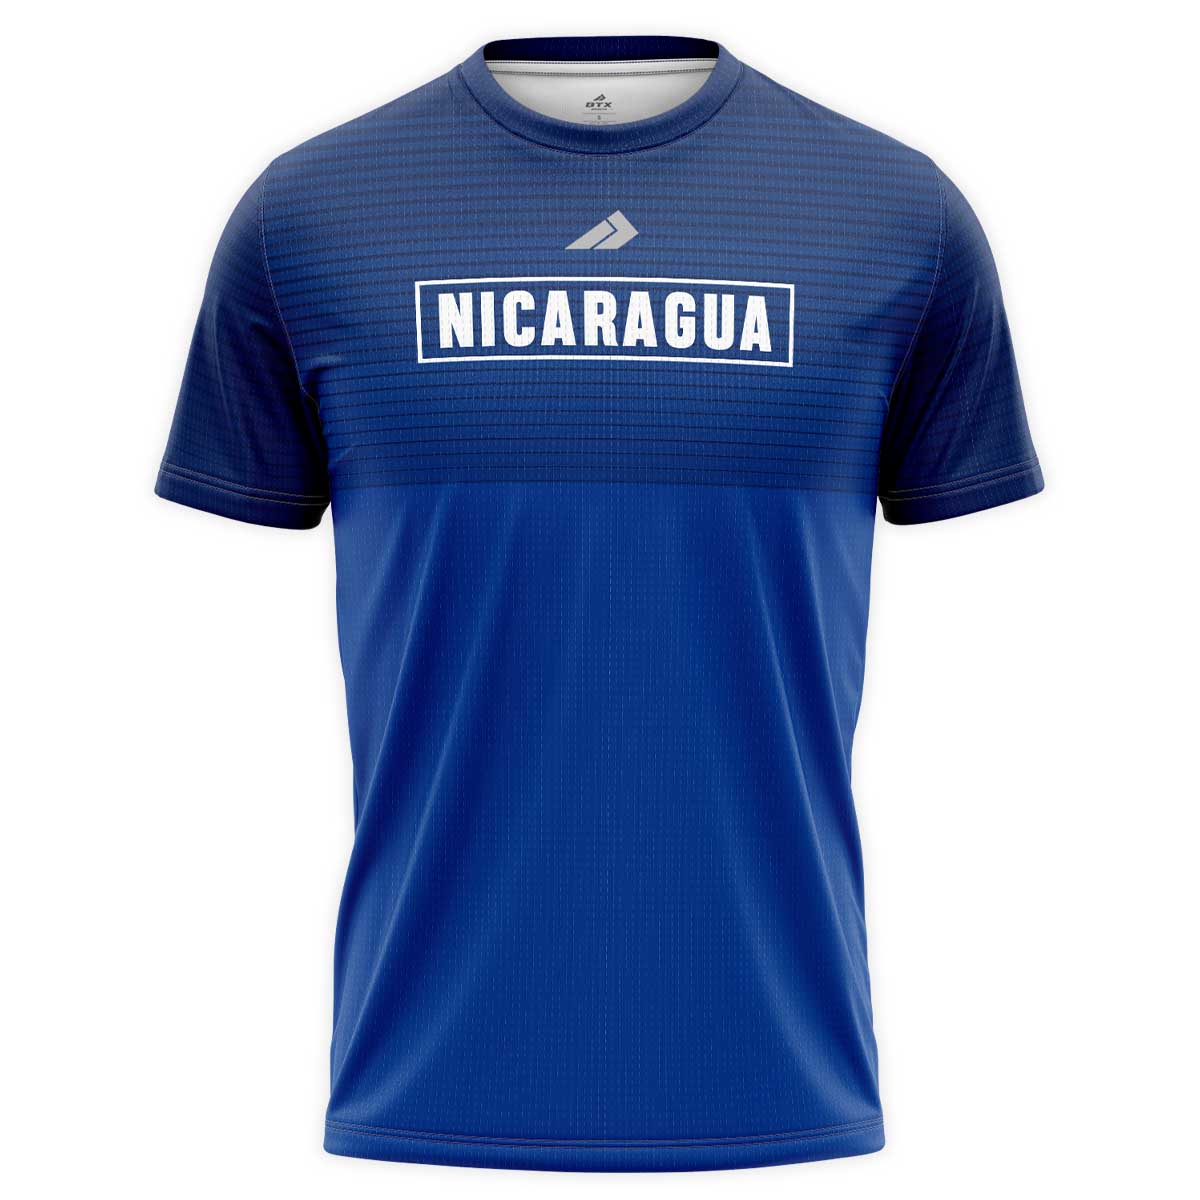 Camiseta de caballero cuello redondo Nicaragua Líneas Azul